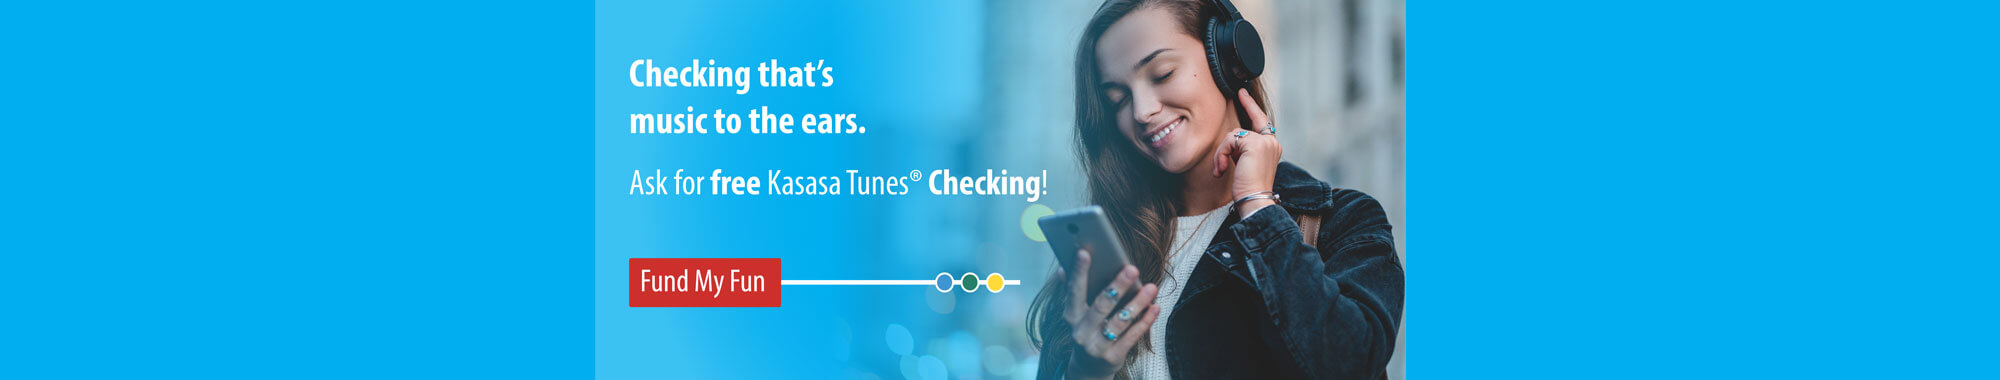 Ask for free Kasasa Tunes checking!